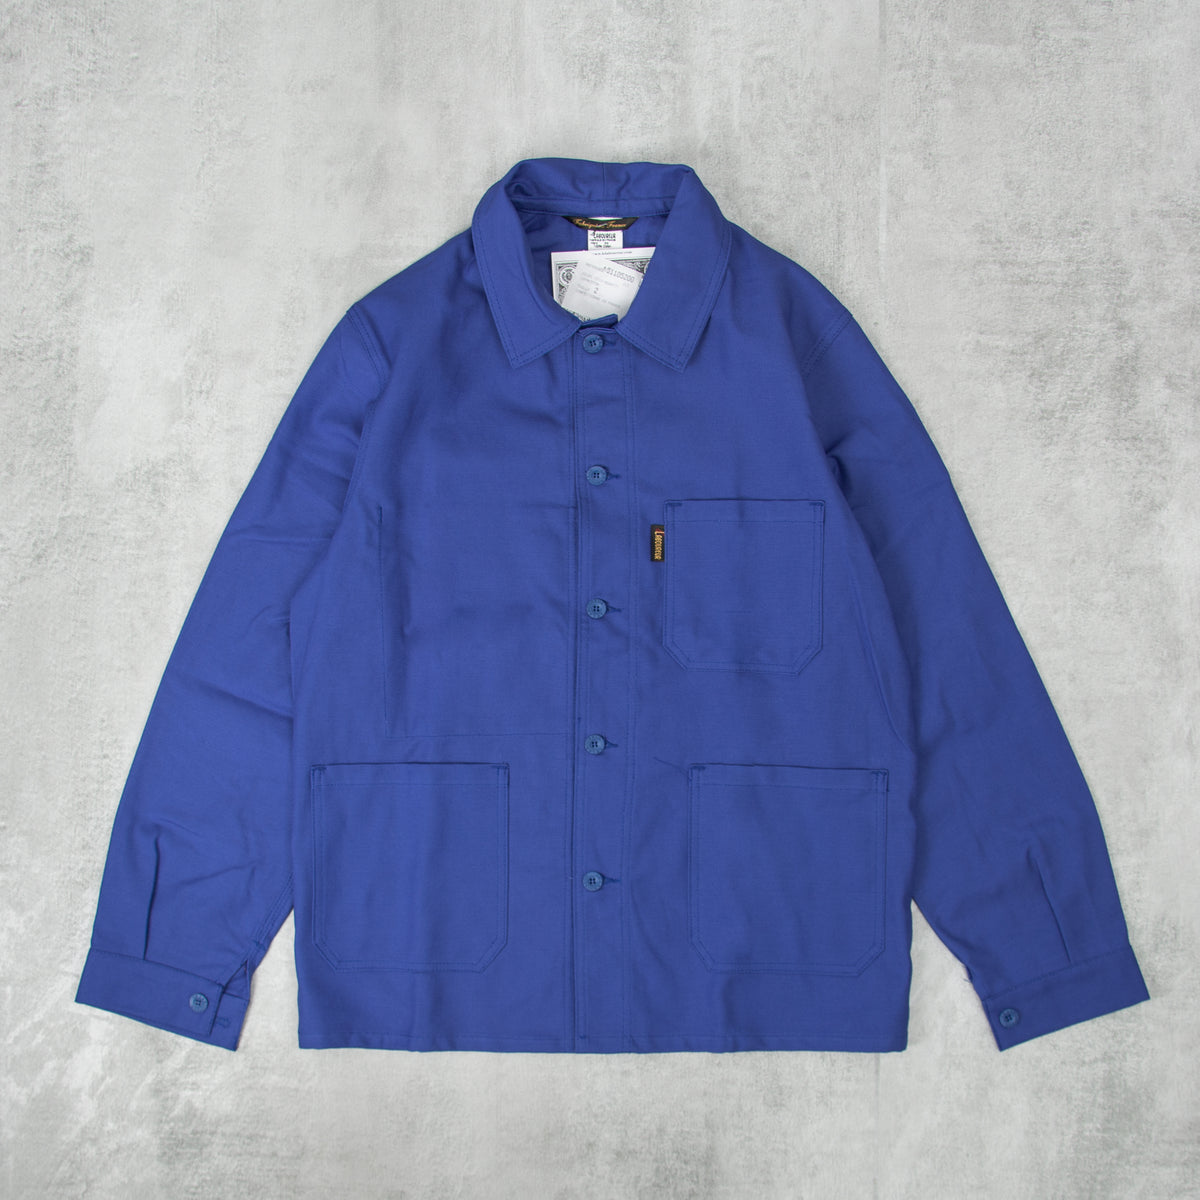 Buy the Le Laboureur Cotton Work Jacket - Bugatti Blue @Union Clothing ...